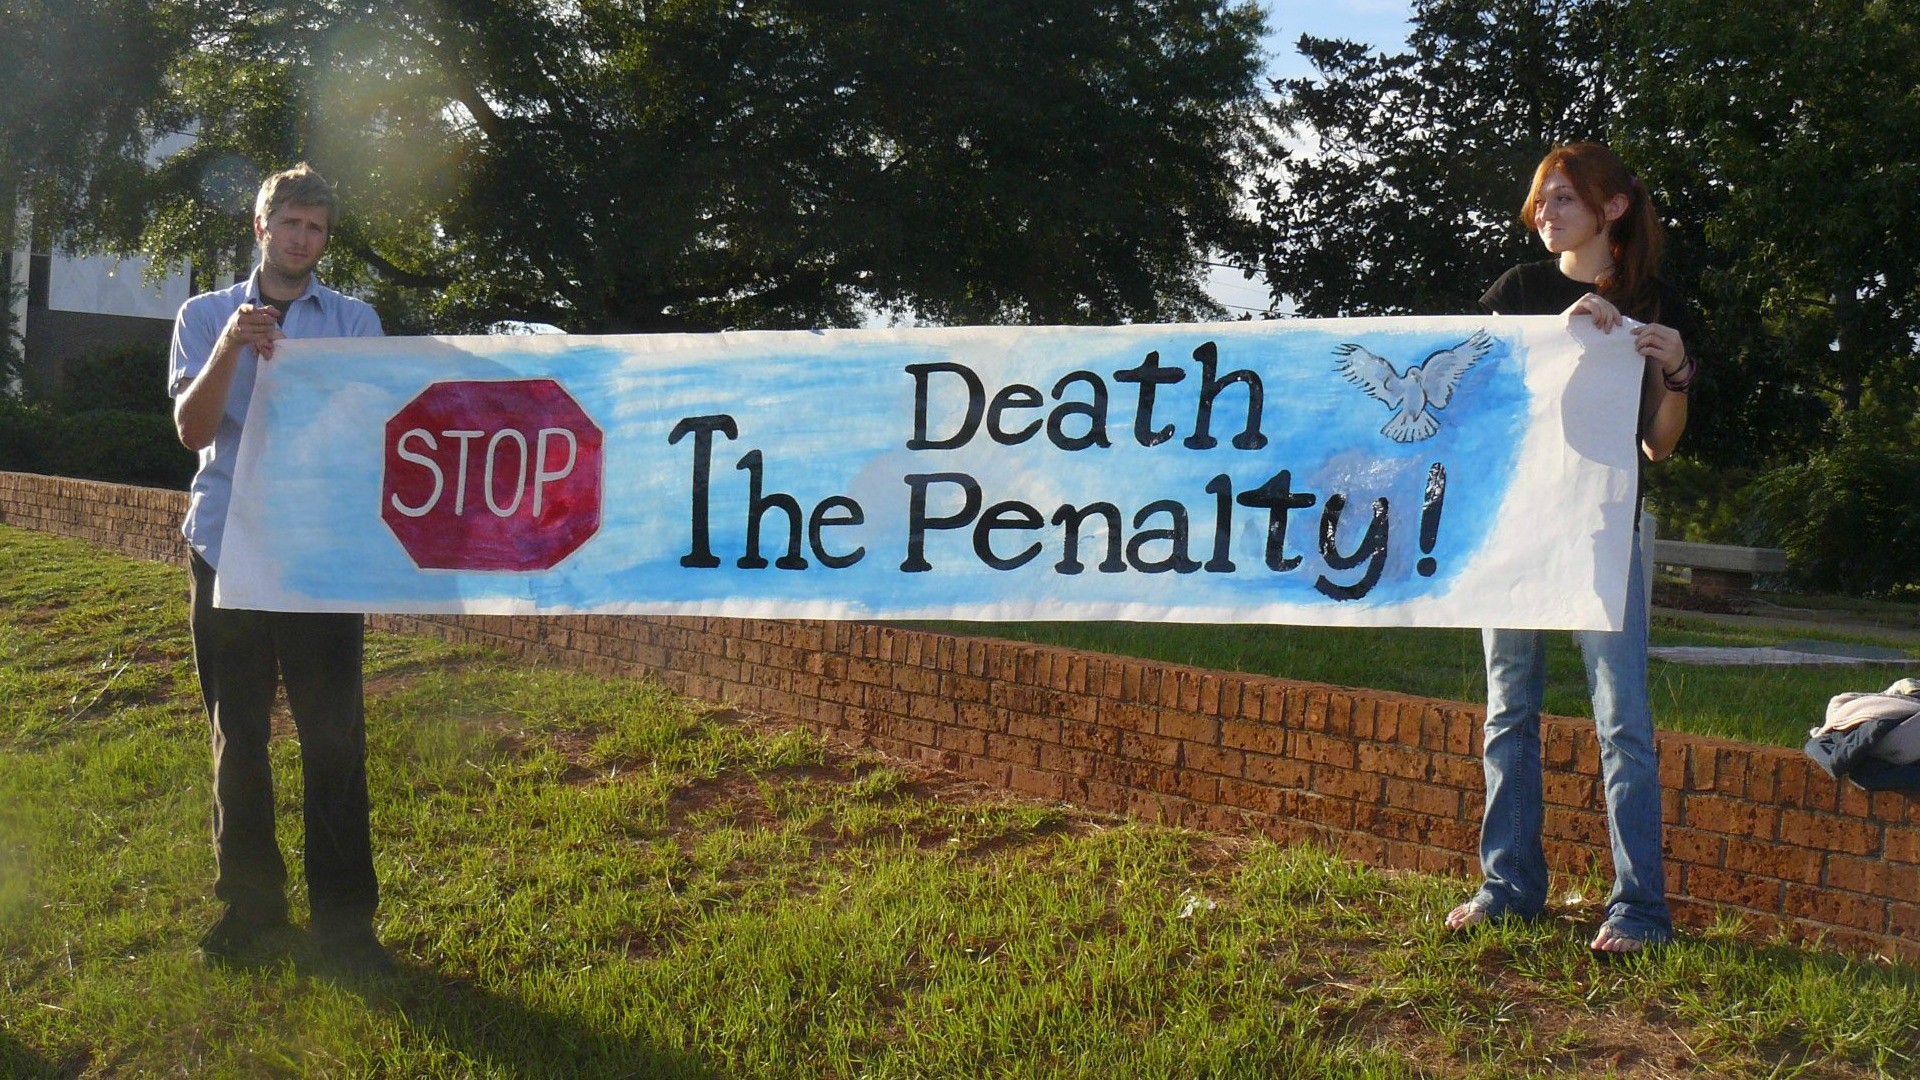 Une majorité d'Américains reste favorable à la peine de mort, même si leur proportion a diminué ces dernières années (Photo:Kurt and Sybilla/Flickr/CC BY-NC 2.0)